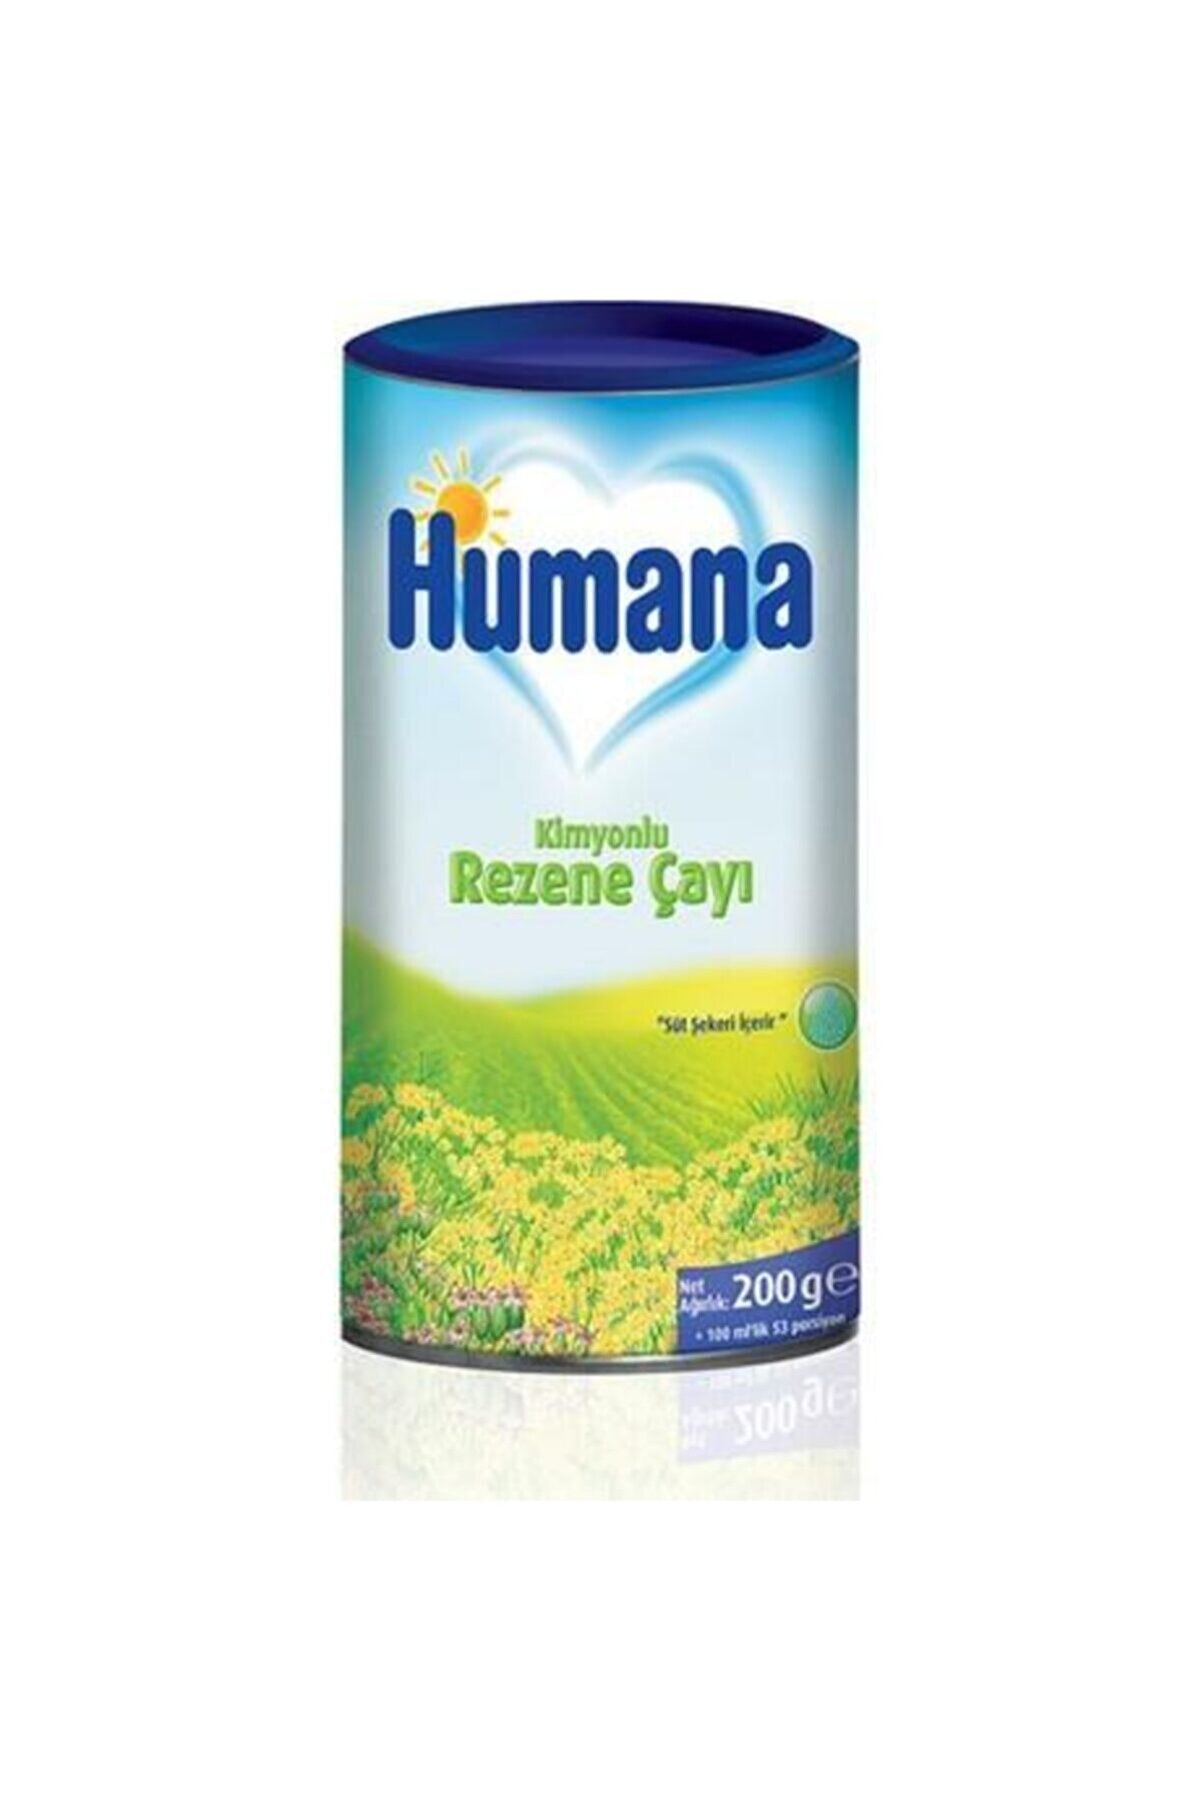 Humana Snl- Rezene Çayı Kimyonlu 200gr